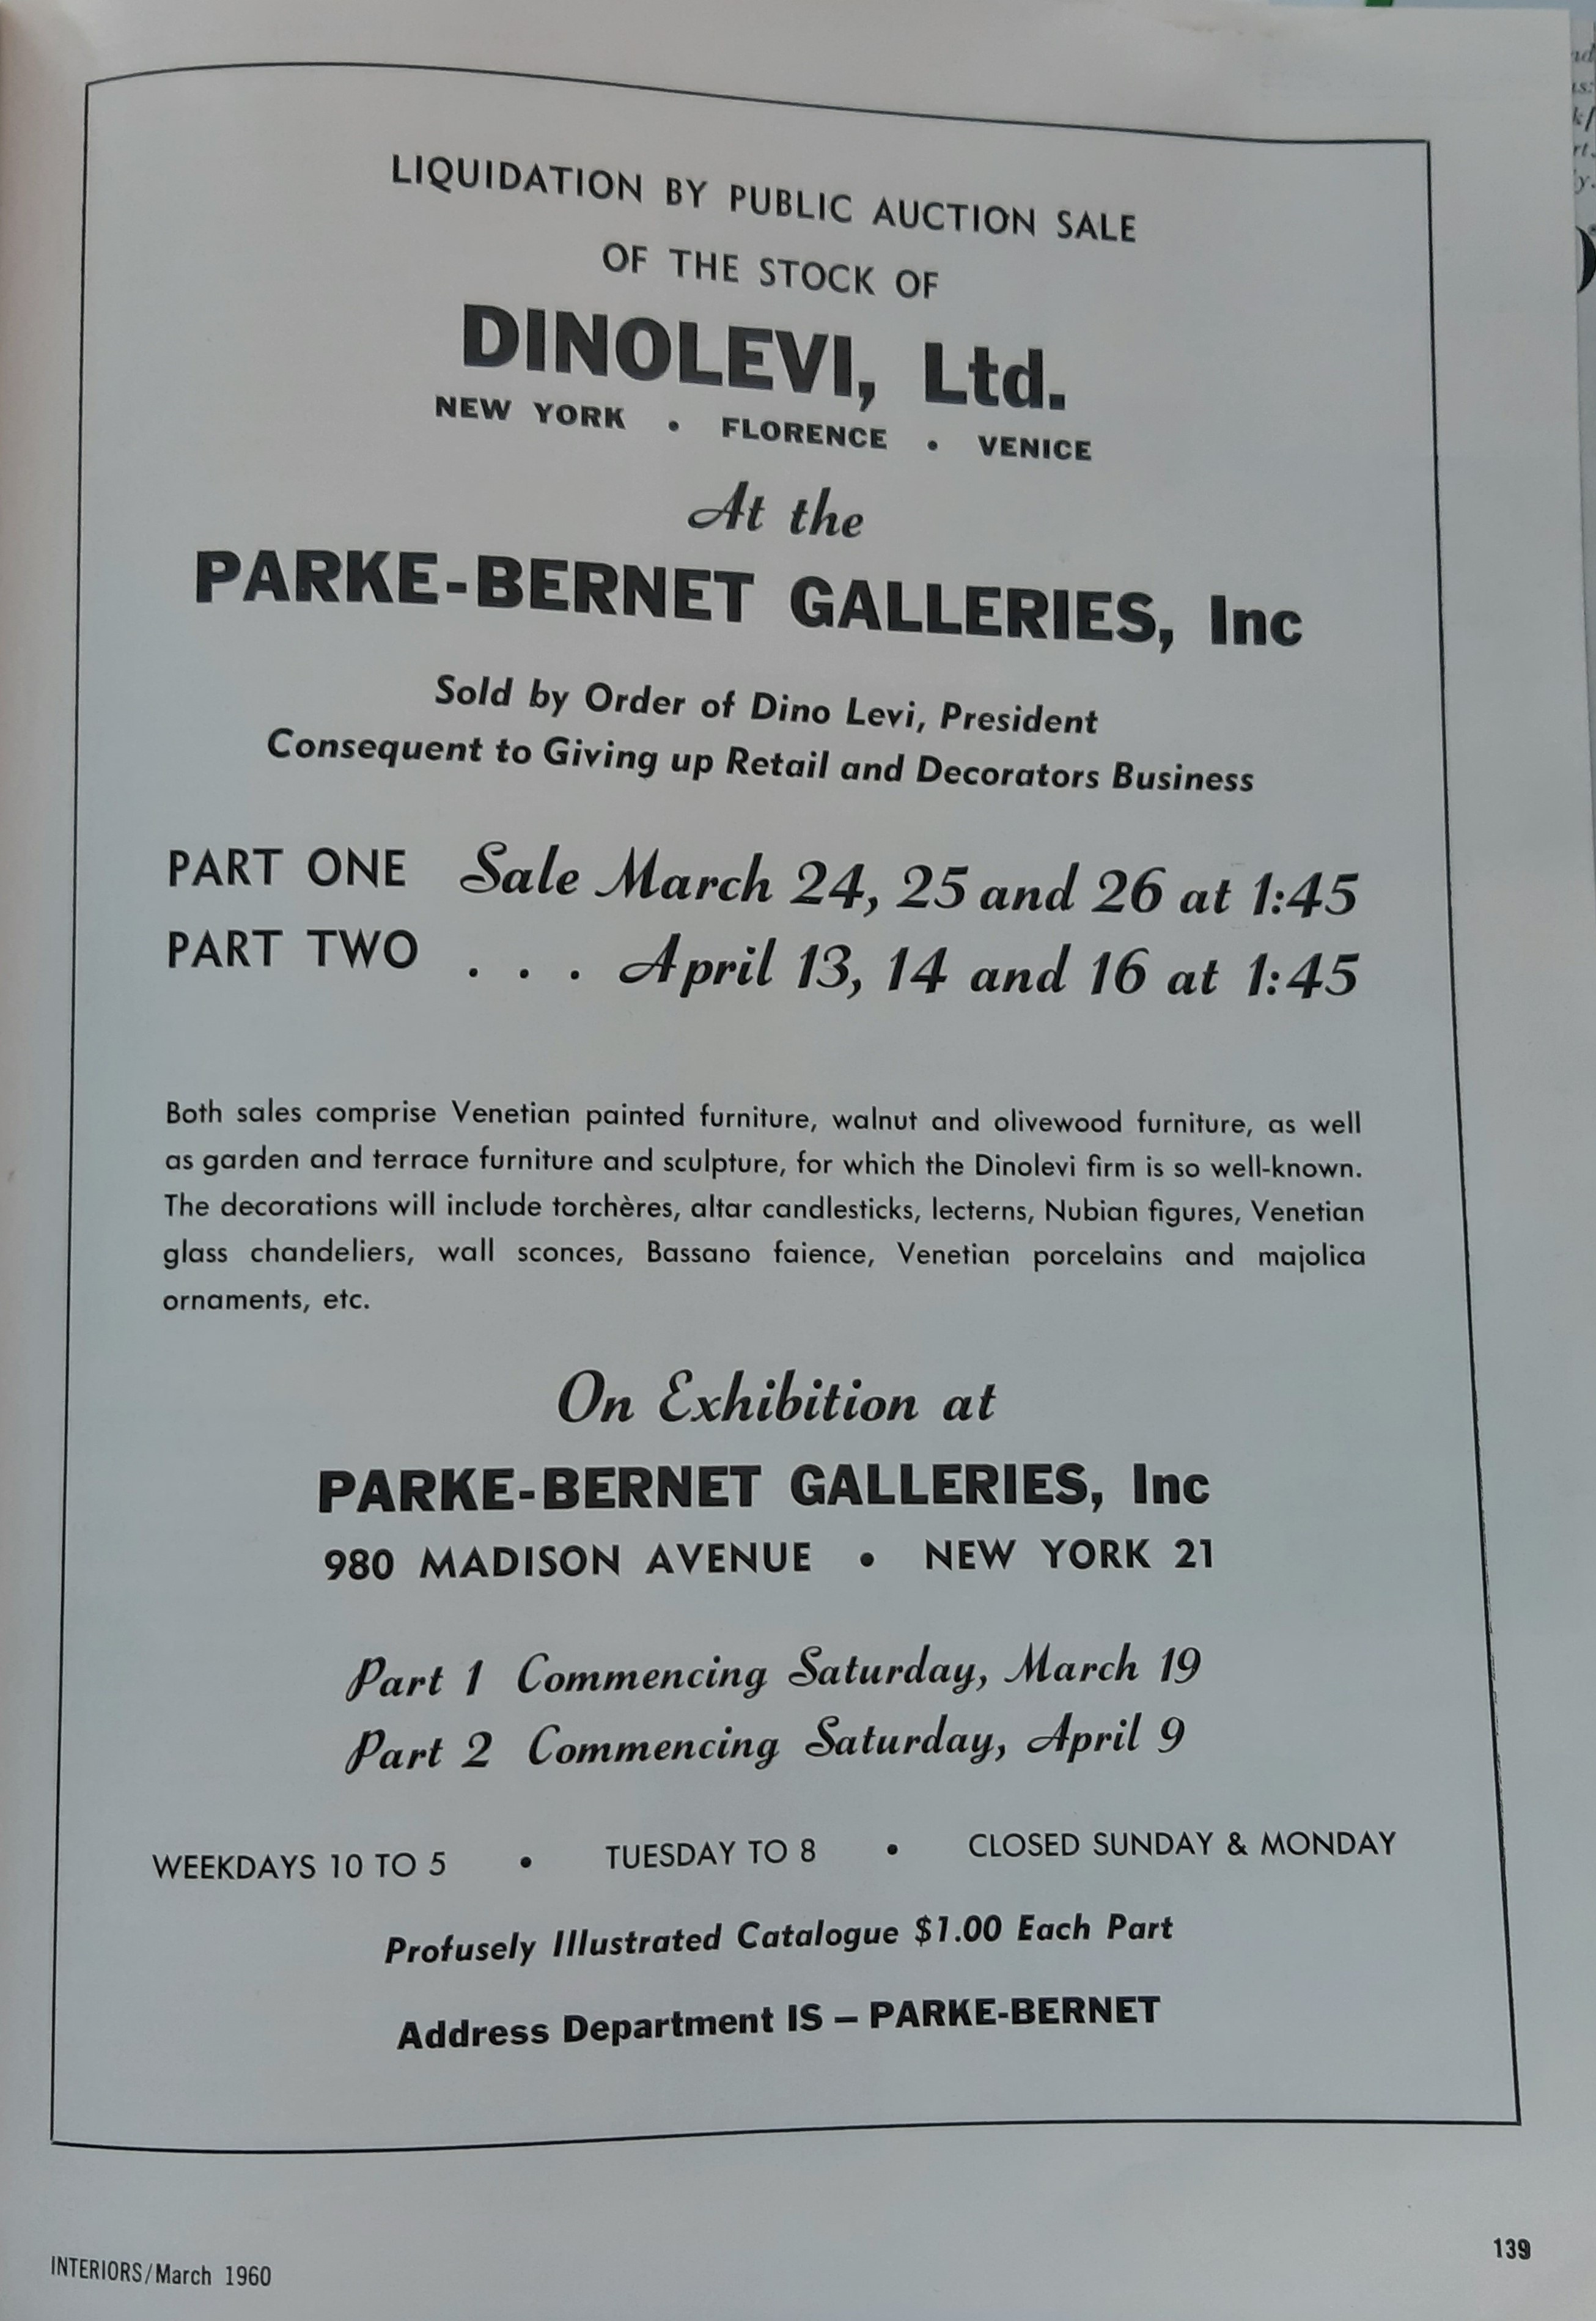 Dinolevi's liquidation by public auction sale,  March 1960